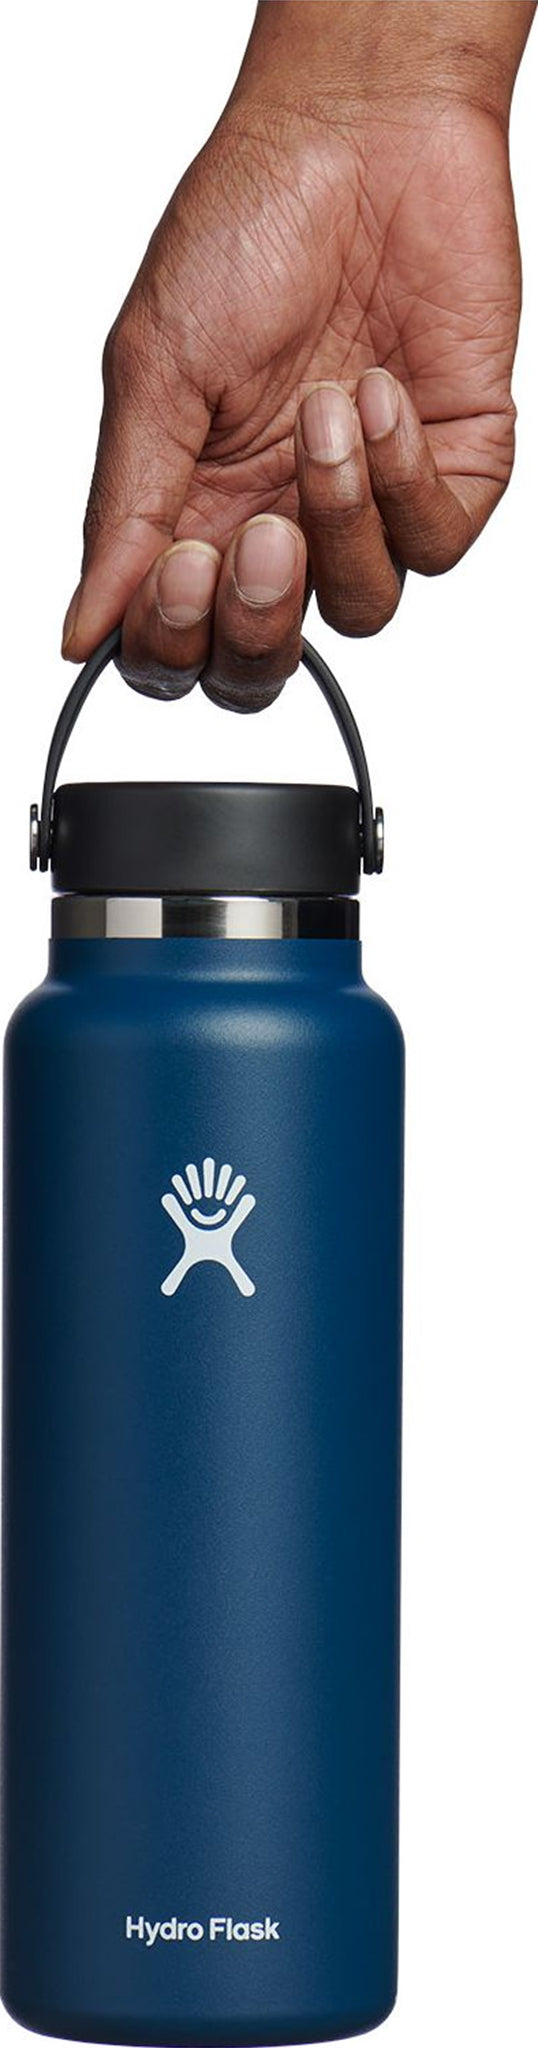 HydroFlask Water Bottle 40oz ALPINE LIGHT BLUE BNWT! (MSRP $49.95)